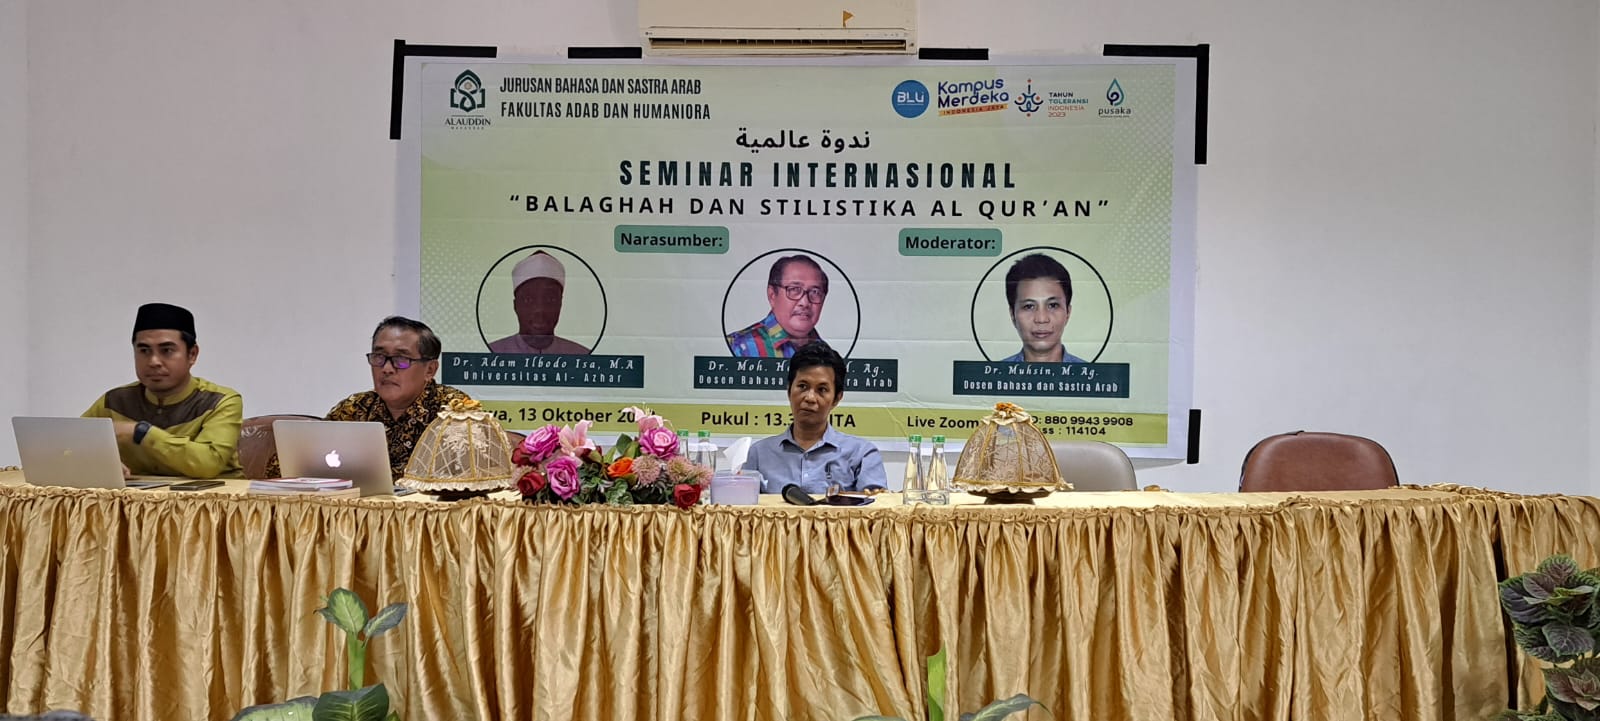 seminar internasional